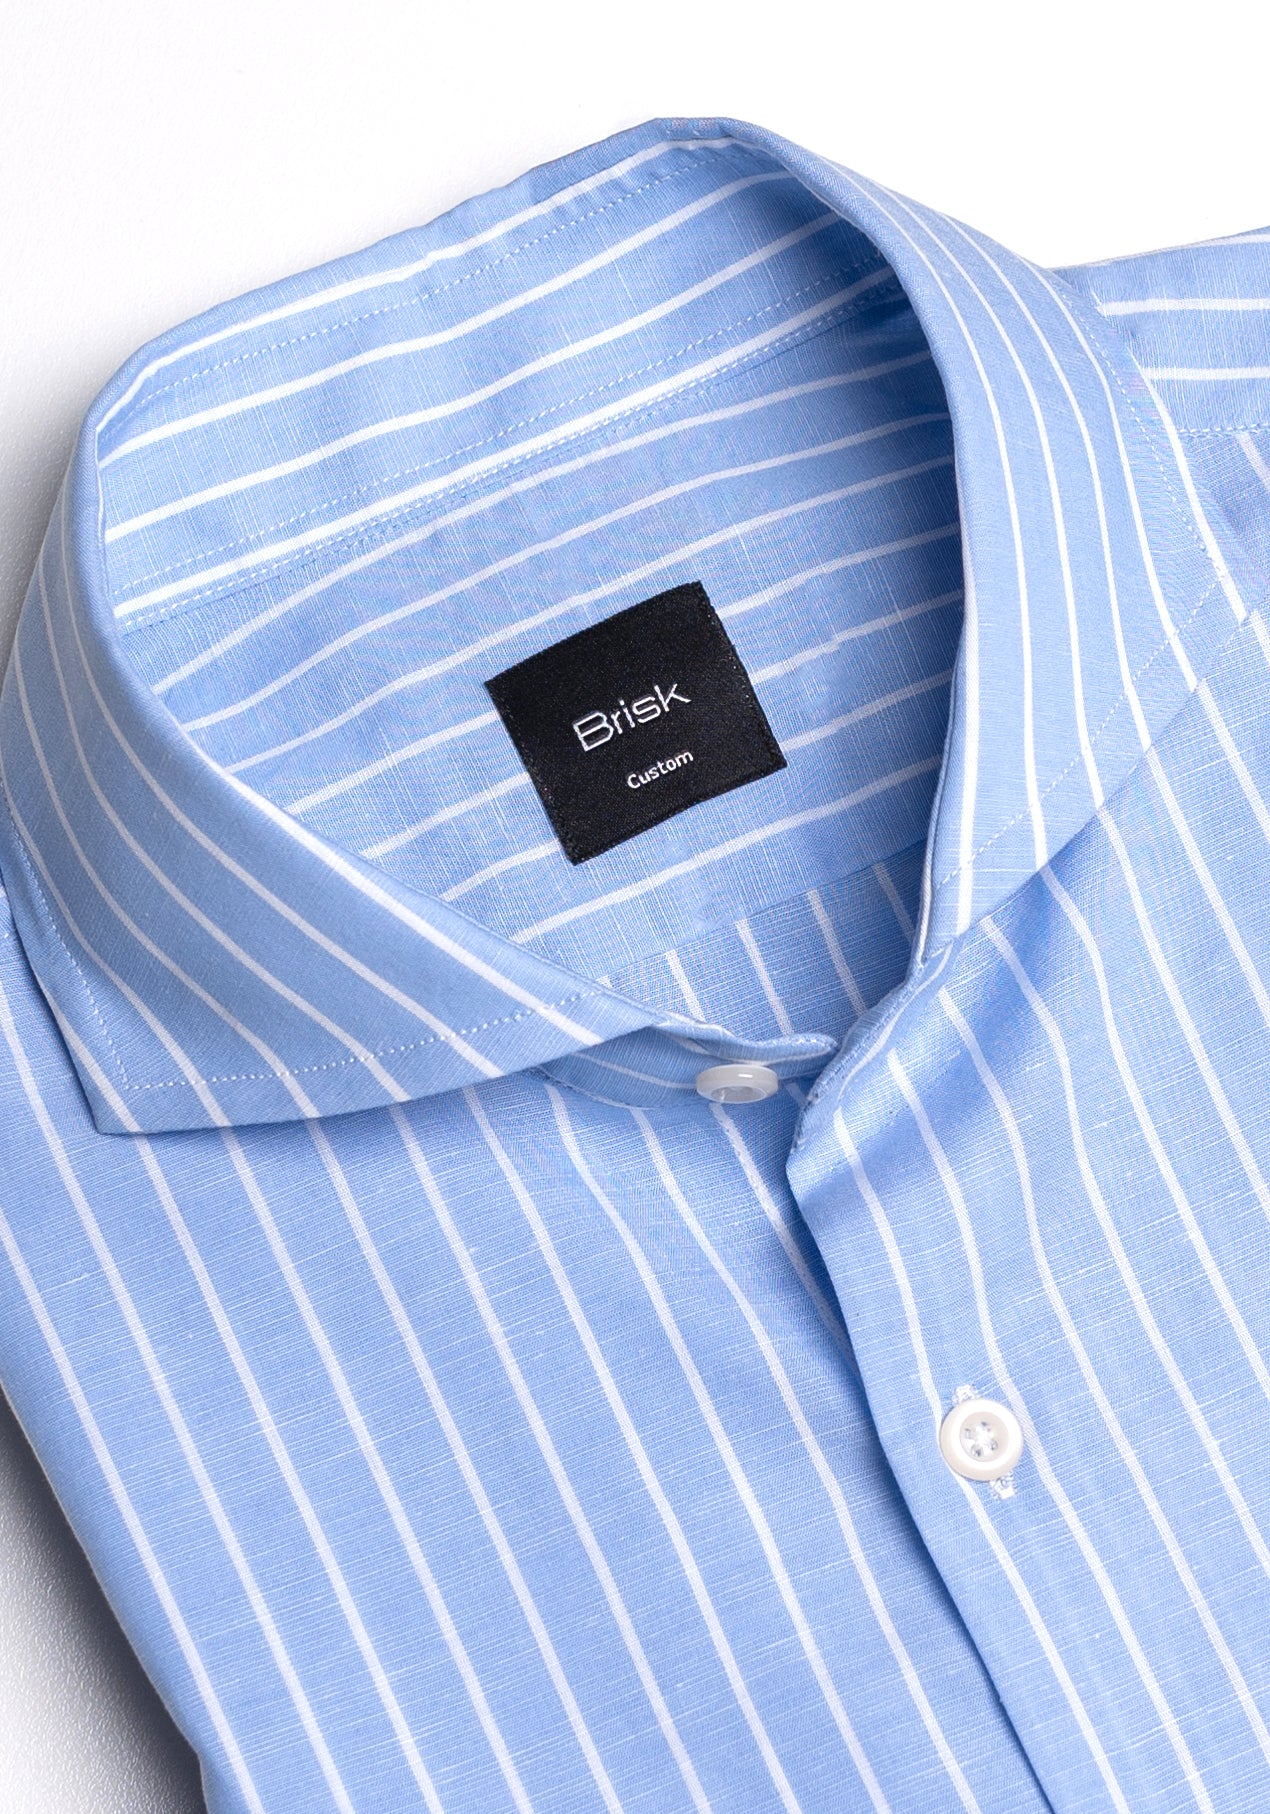 Sky Blue Light Weight Cotton Linen Stripes Shirt - Half Sleeves - Sale